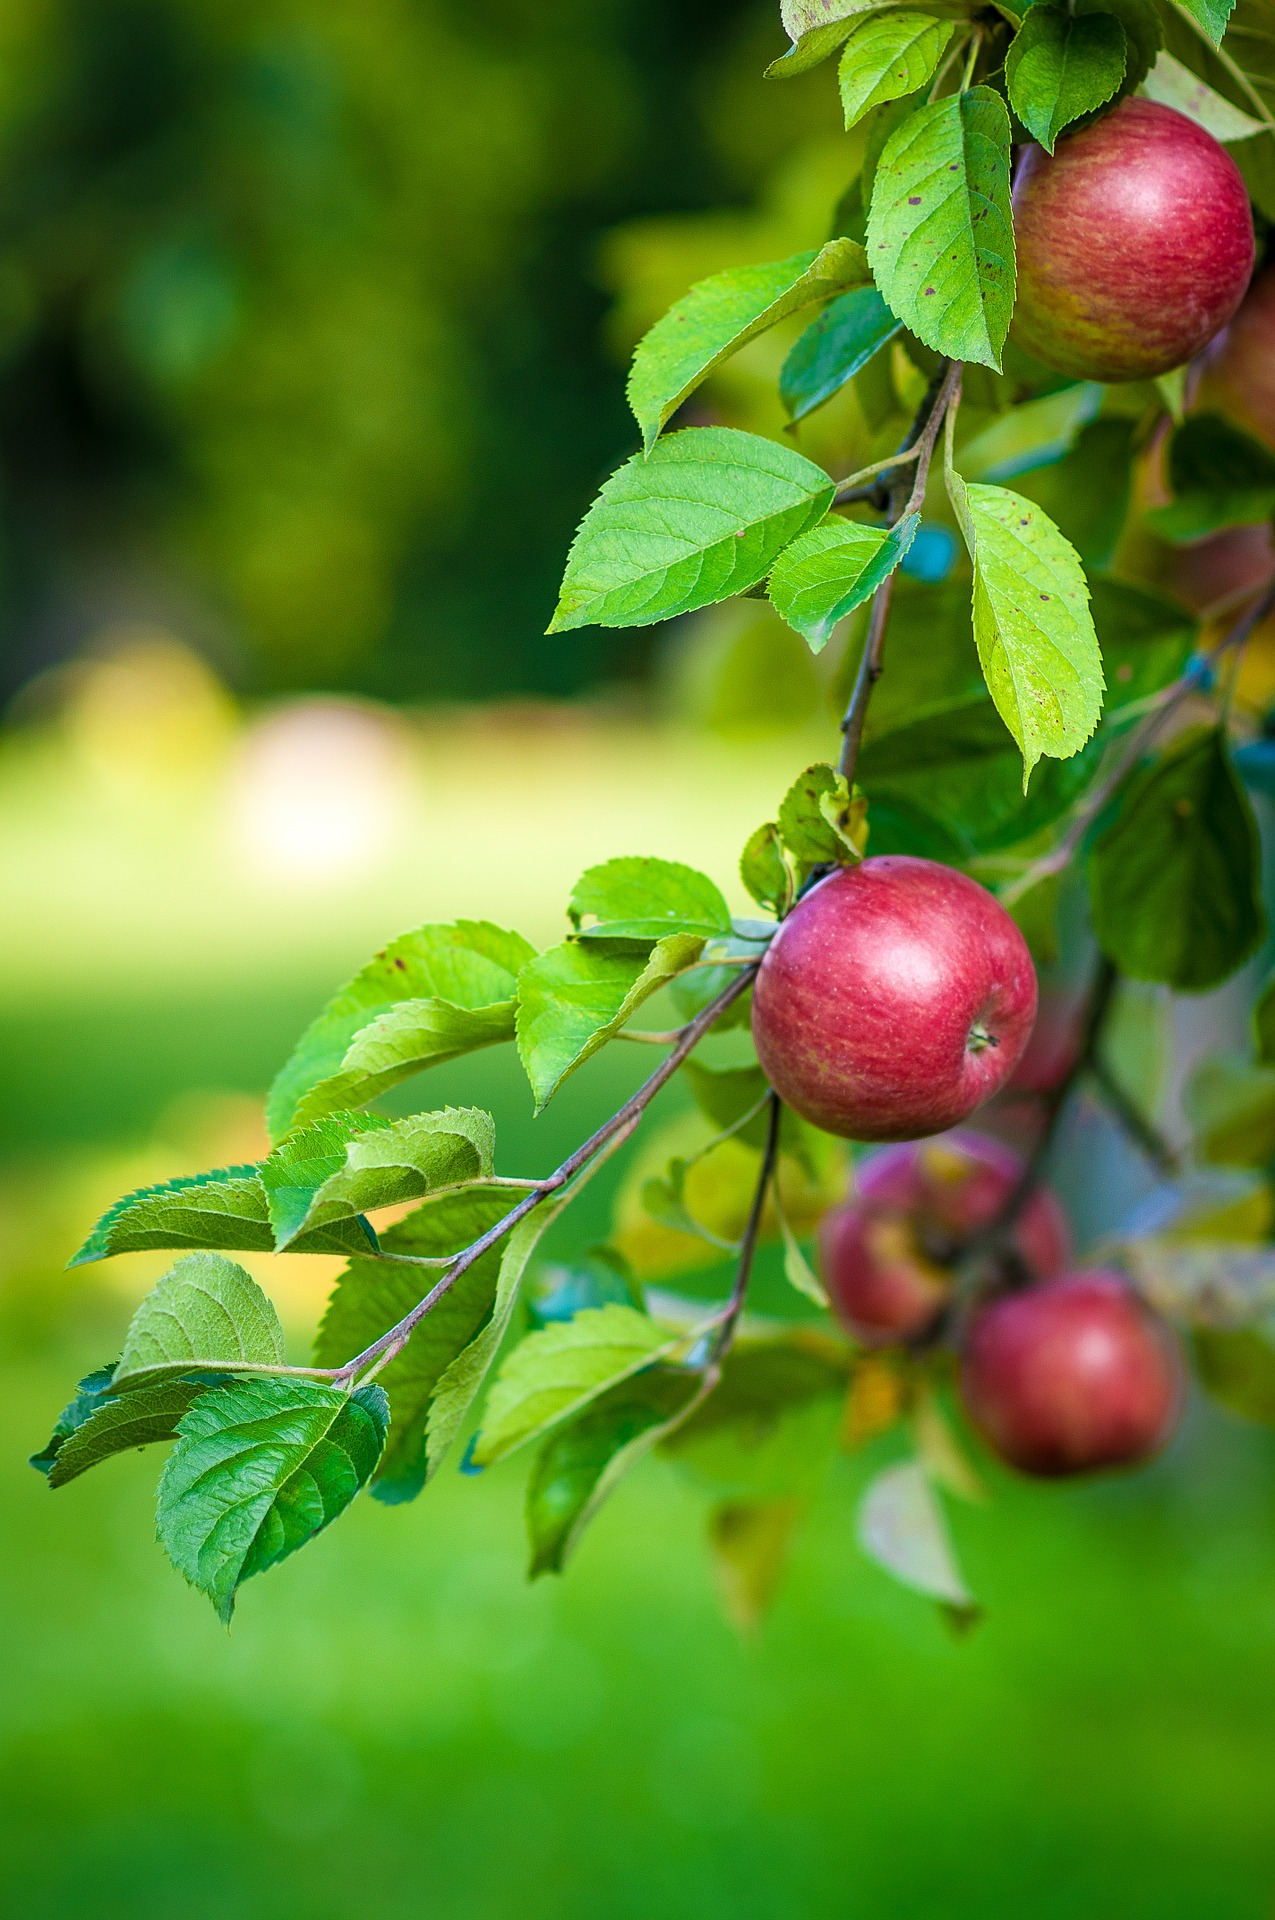 सेब का पेड़ उगाने का तरीका – Apple tree